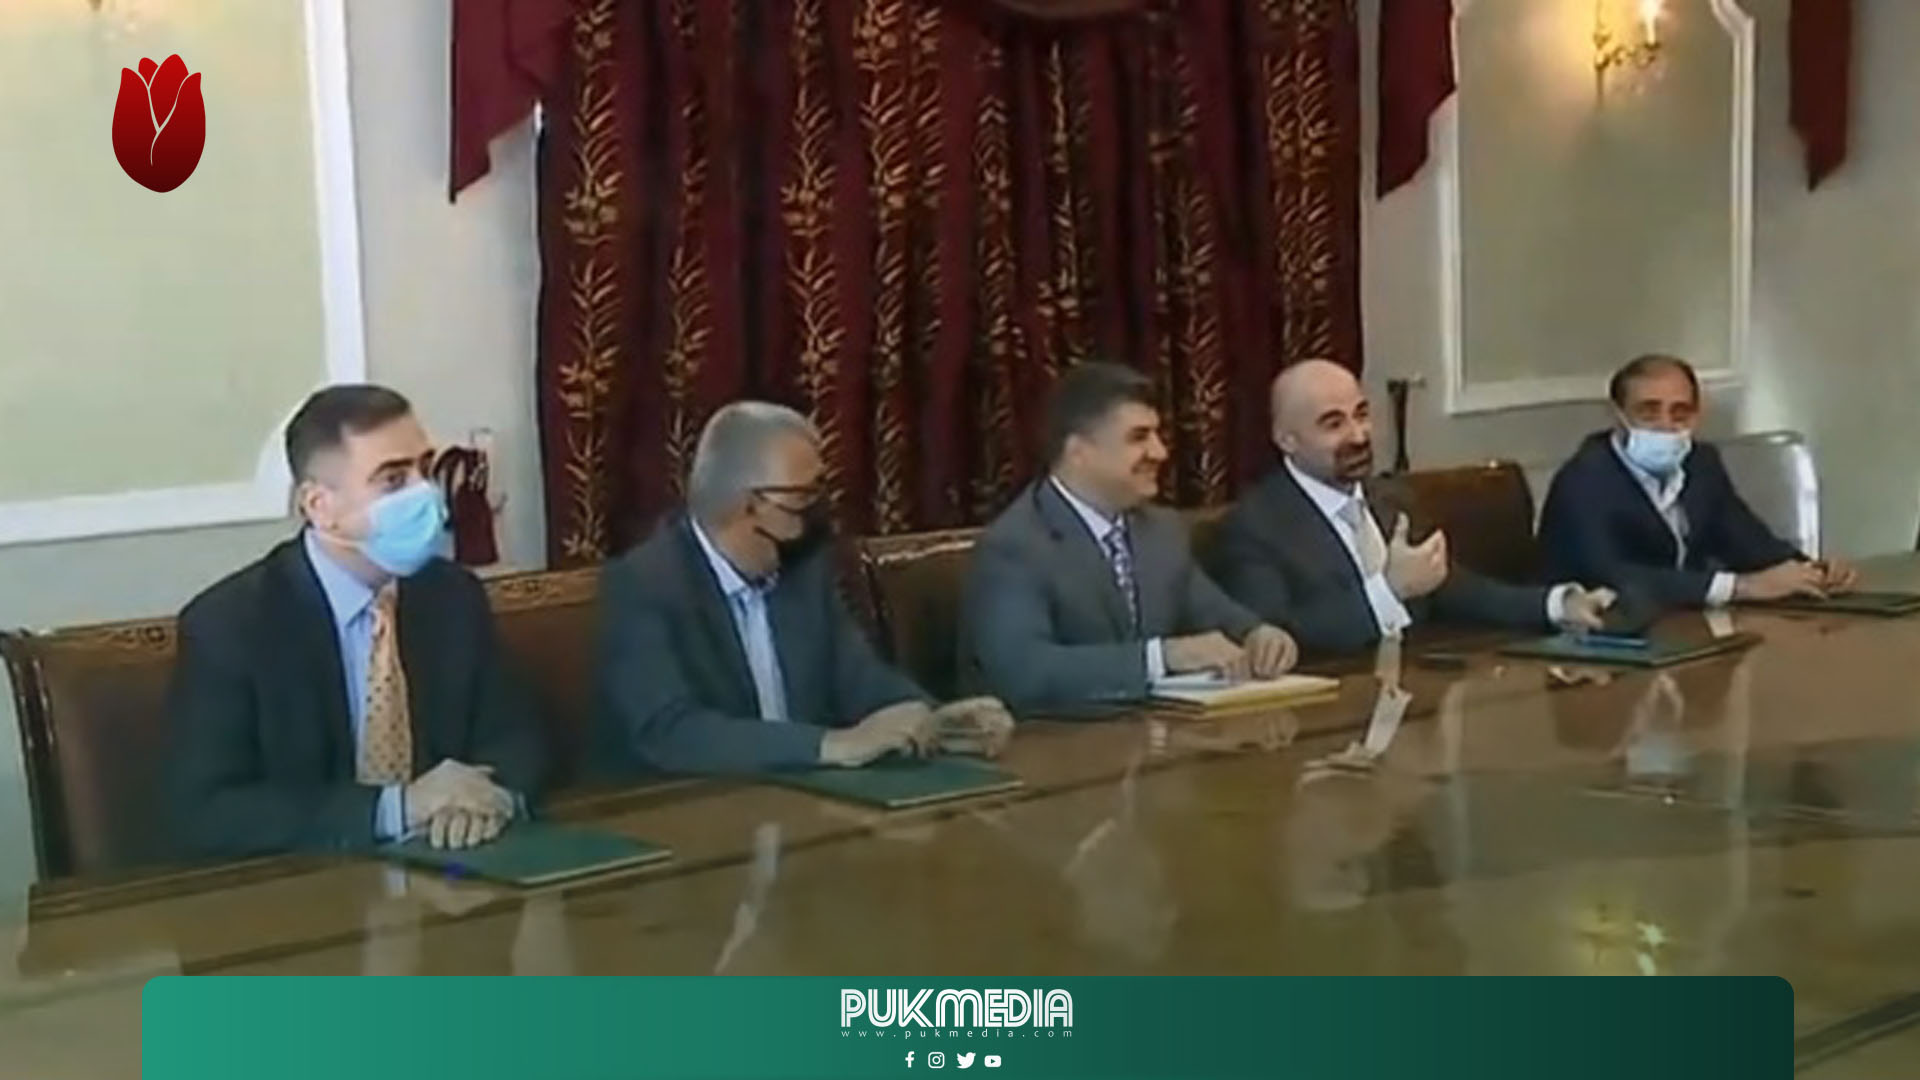 بدء اجتماع الاتحاد الوطني مع رئاسة اقليم كوردستان